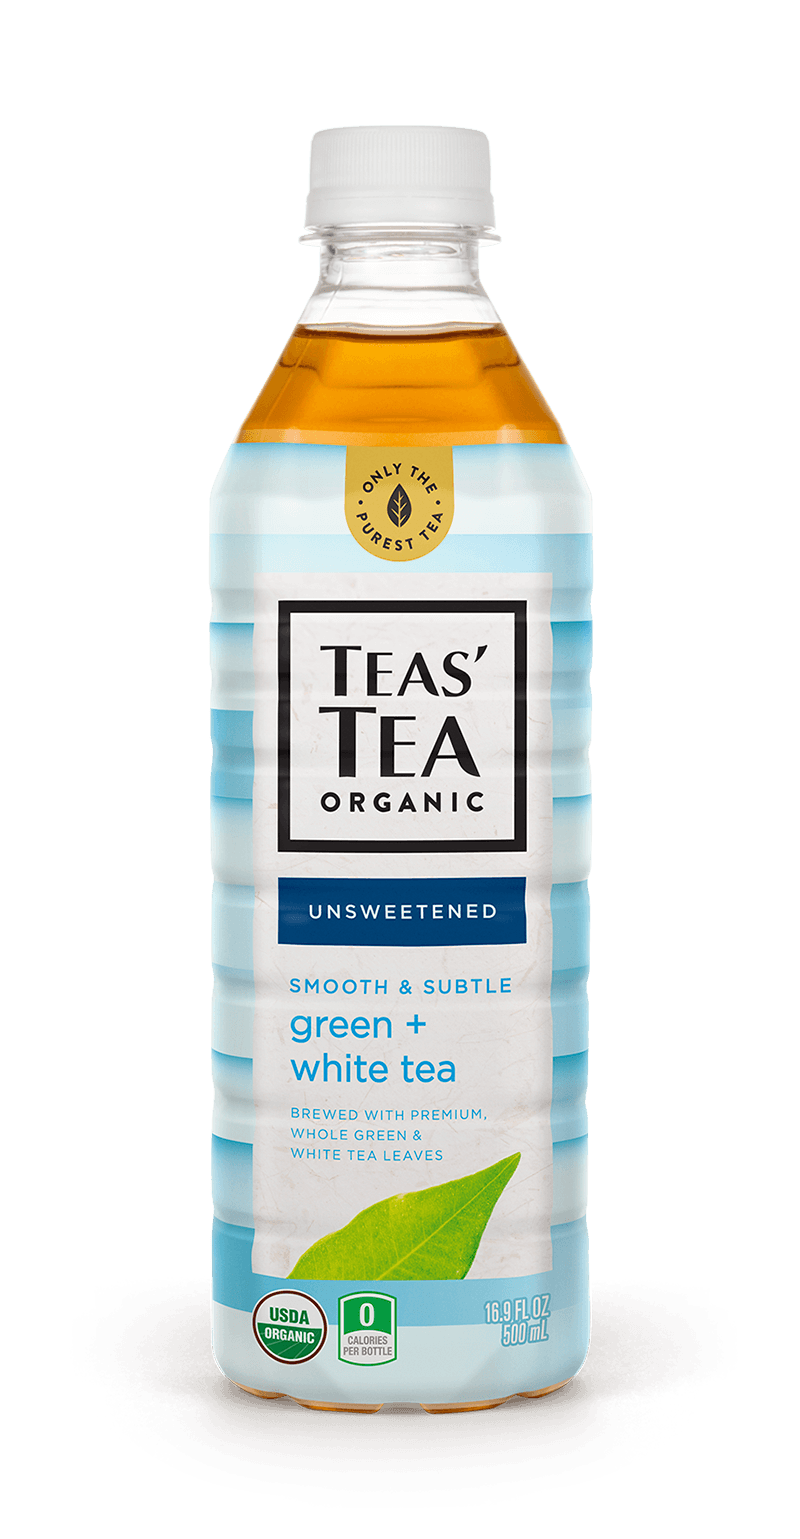 Smooth & Subtle Green + White Tea Unsweetened (Teas' Tea)